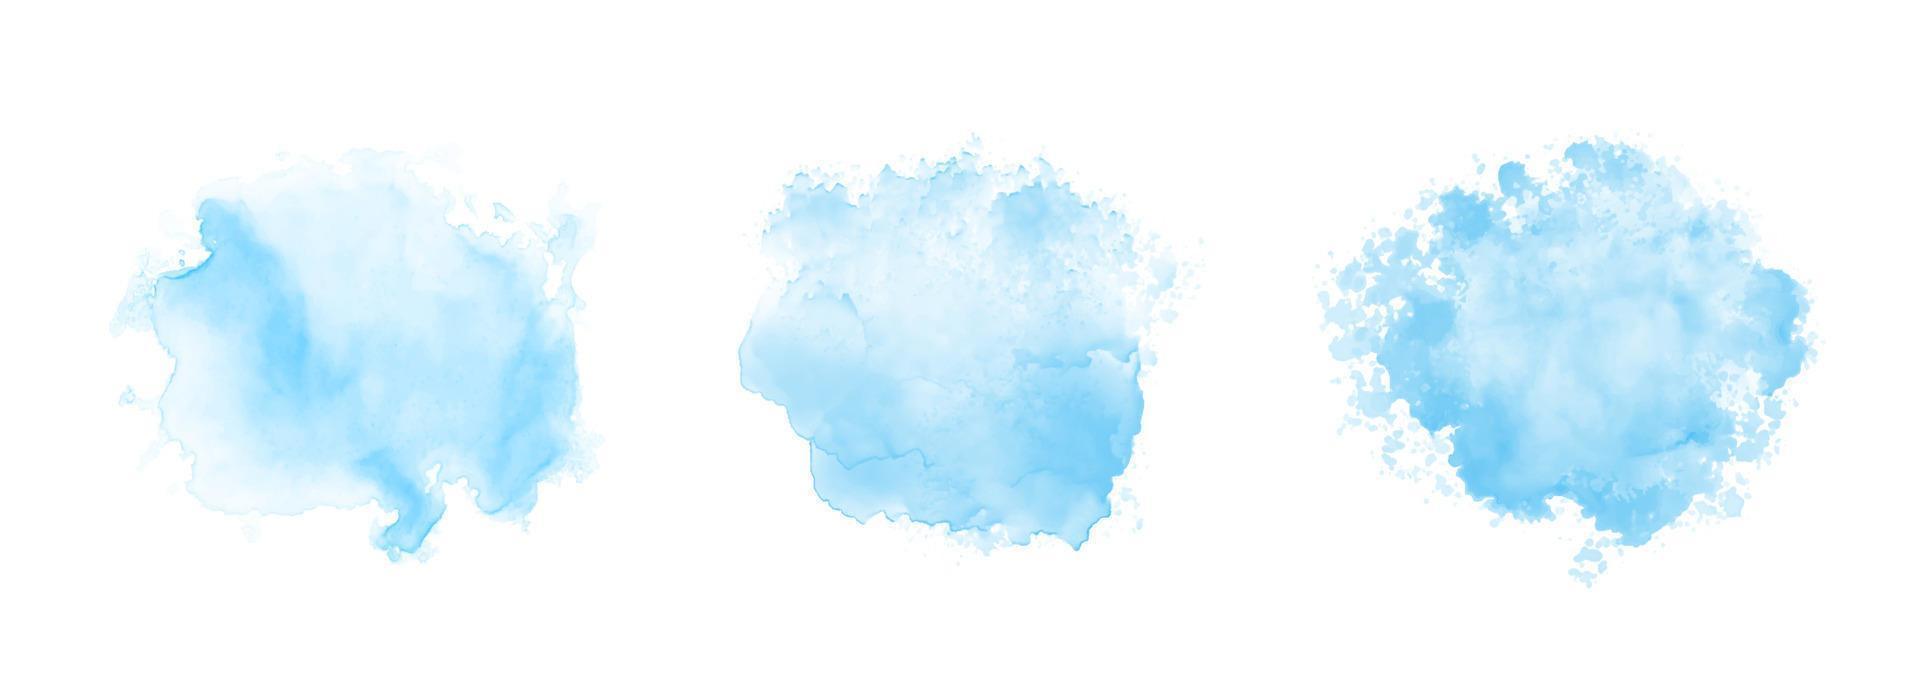 abstract patroon met blauwe aquarel wolken op witte achtergrond. cyaan aquarel water onbezonnen splash textuur vector